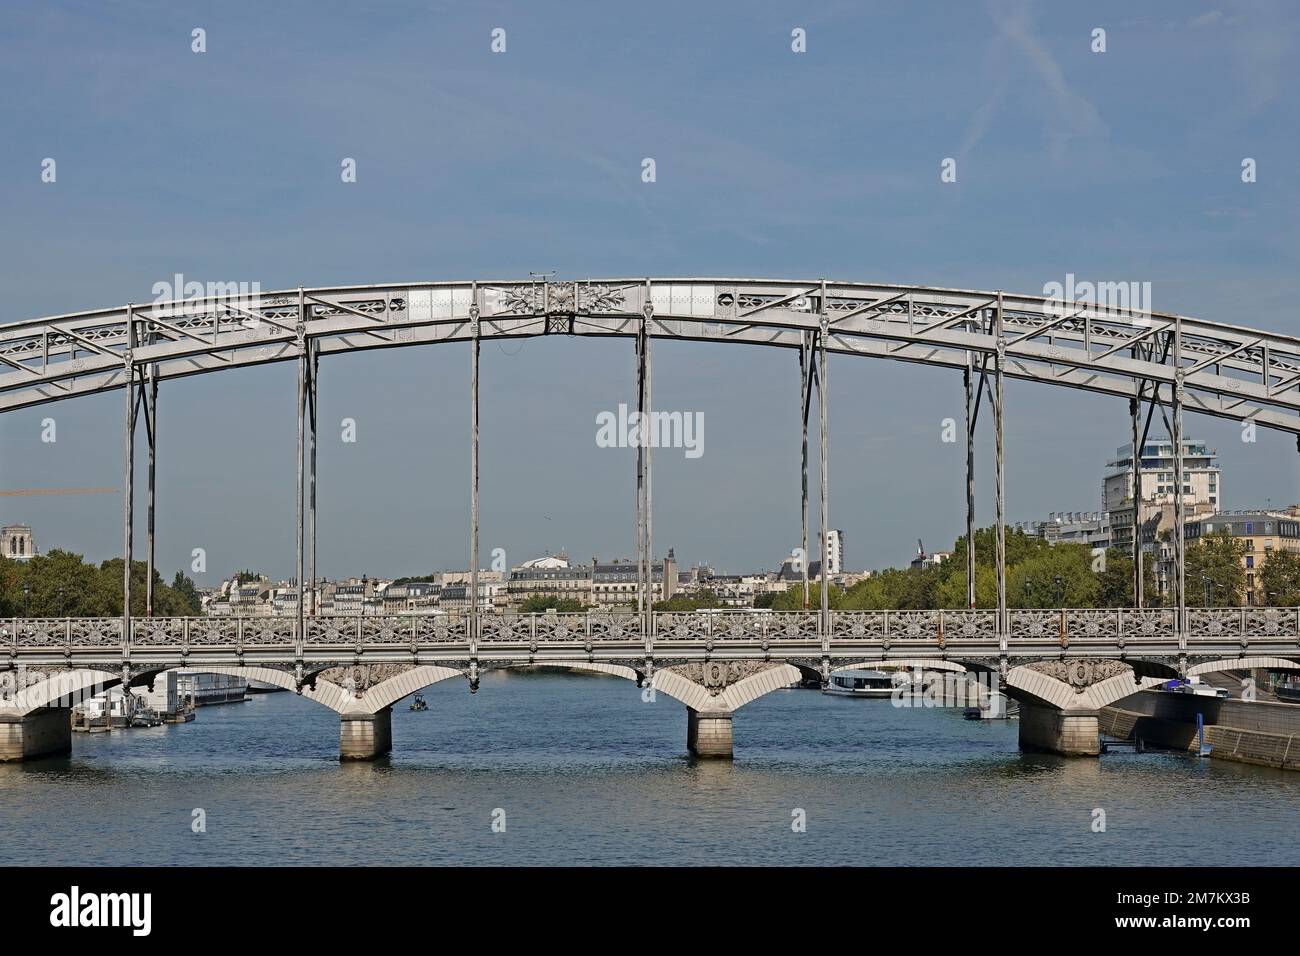 Francia, París, Viaduc d'Austerlitz (Viaducto de Austerlitz) es un puente ferroviario de arco de acero de una sola cubierta que cruza el Sena Foto © Fabio Mazzarella/Si Foto de stock